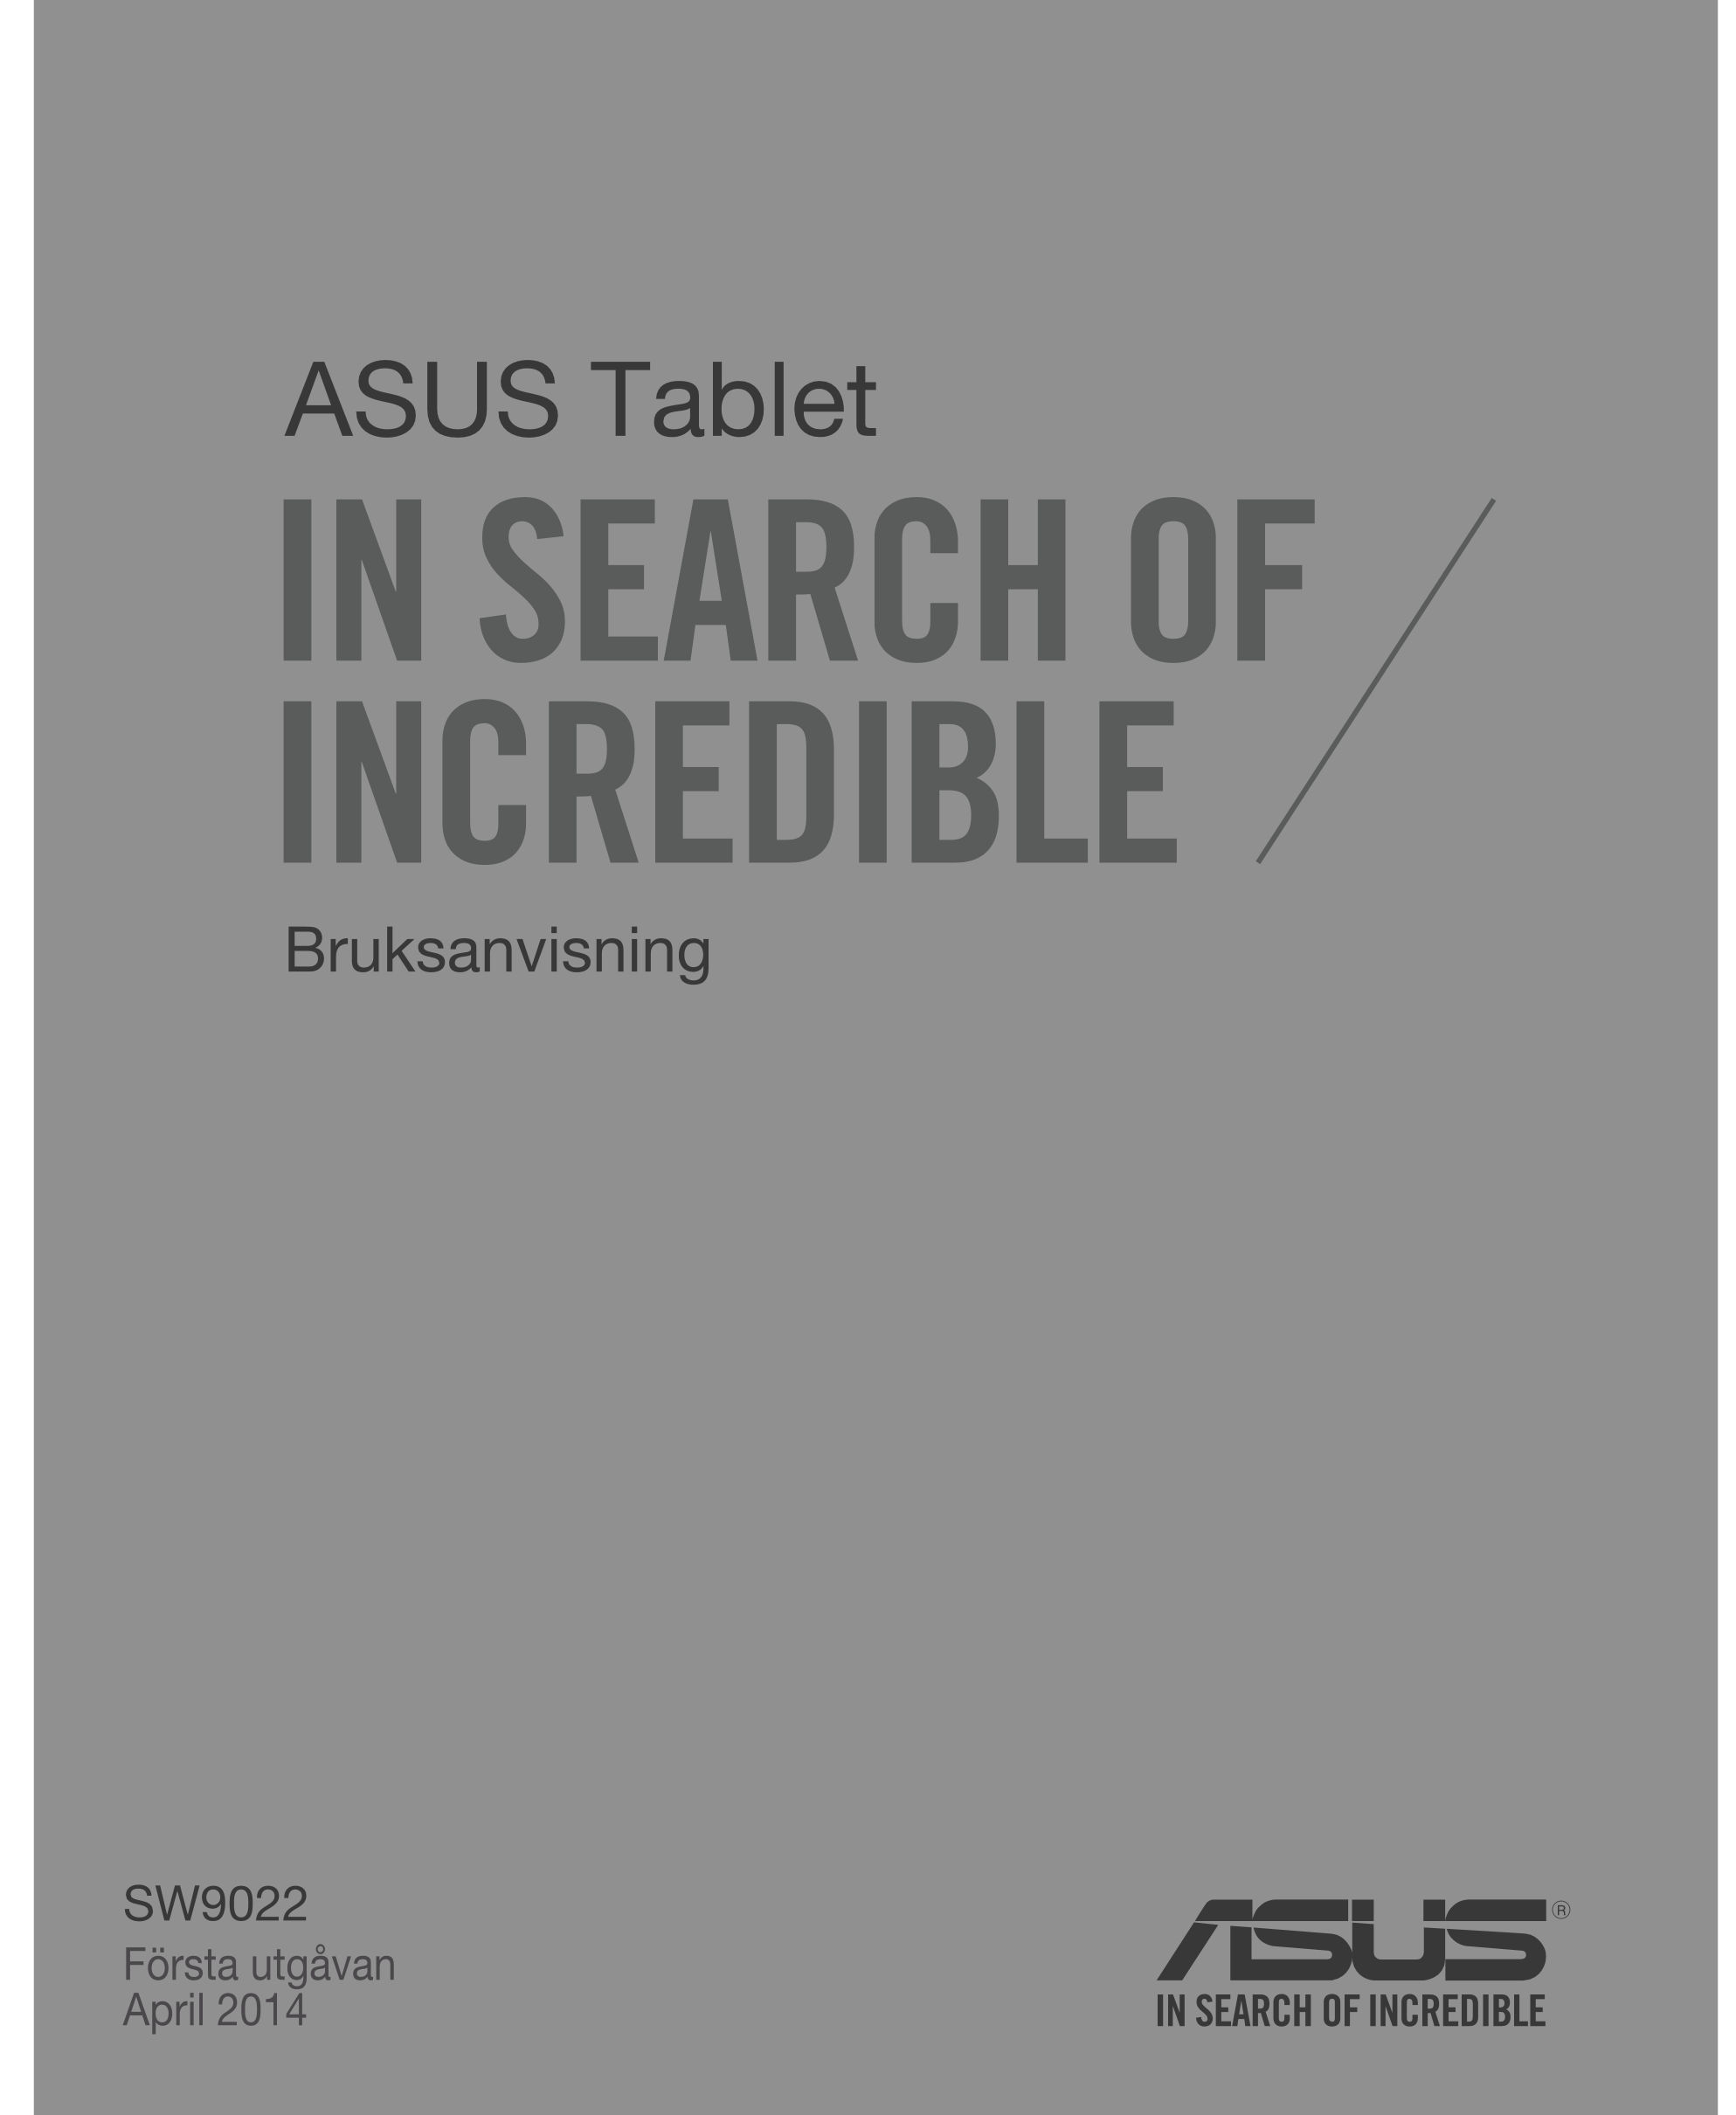 ASUS Tablet
Bruksanvisning
SW9022
Första utgåvan
April 2014